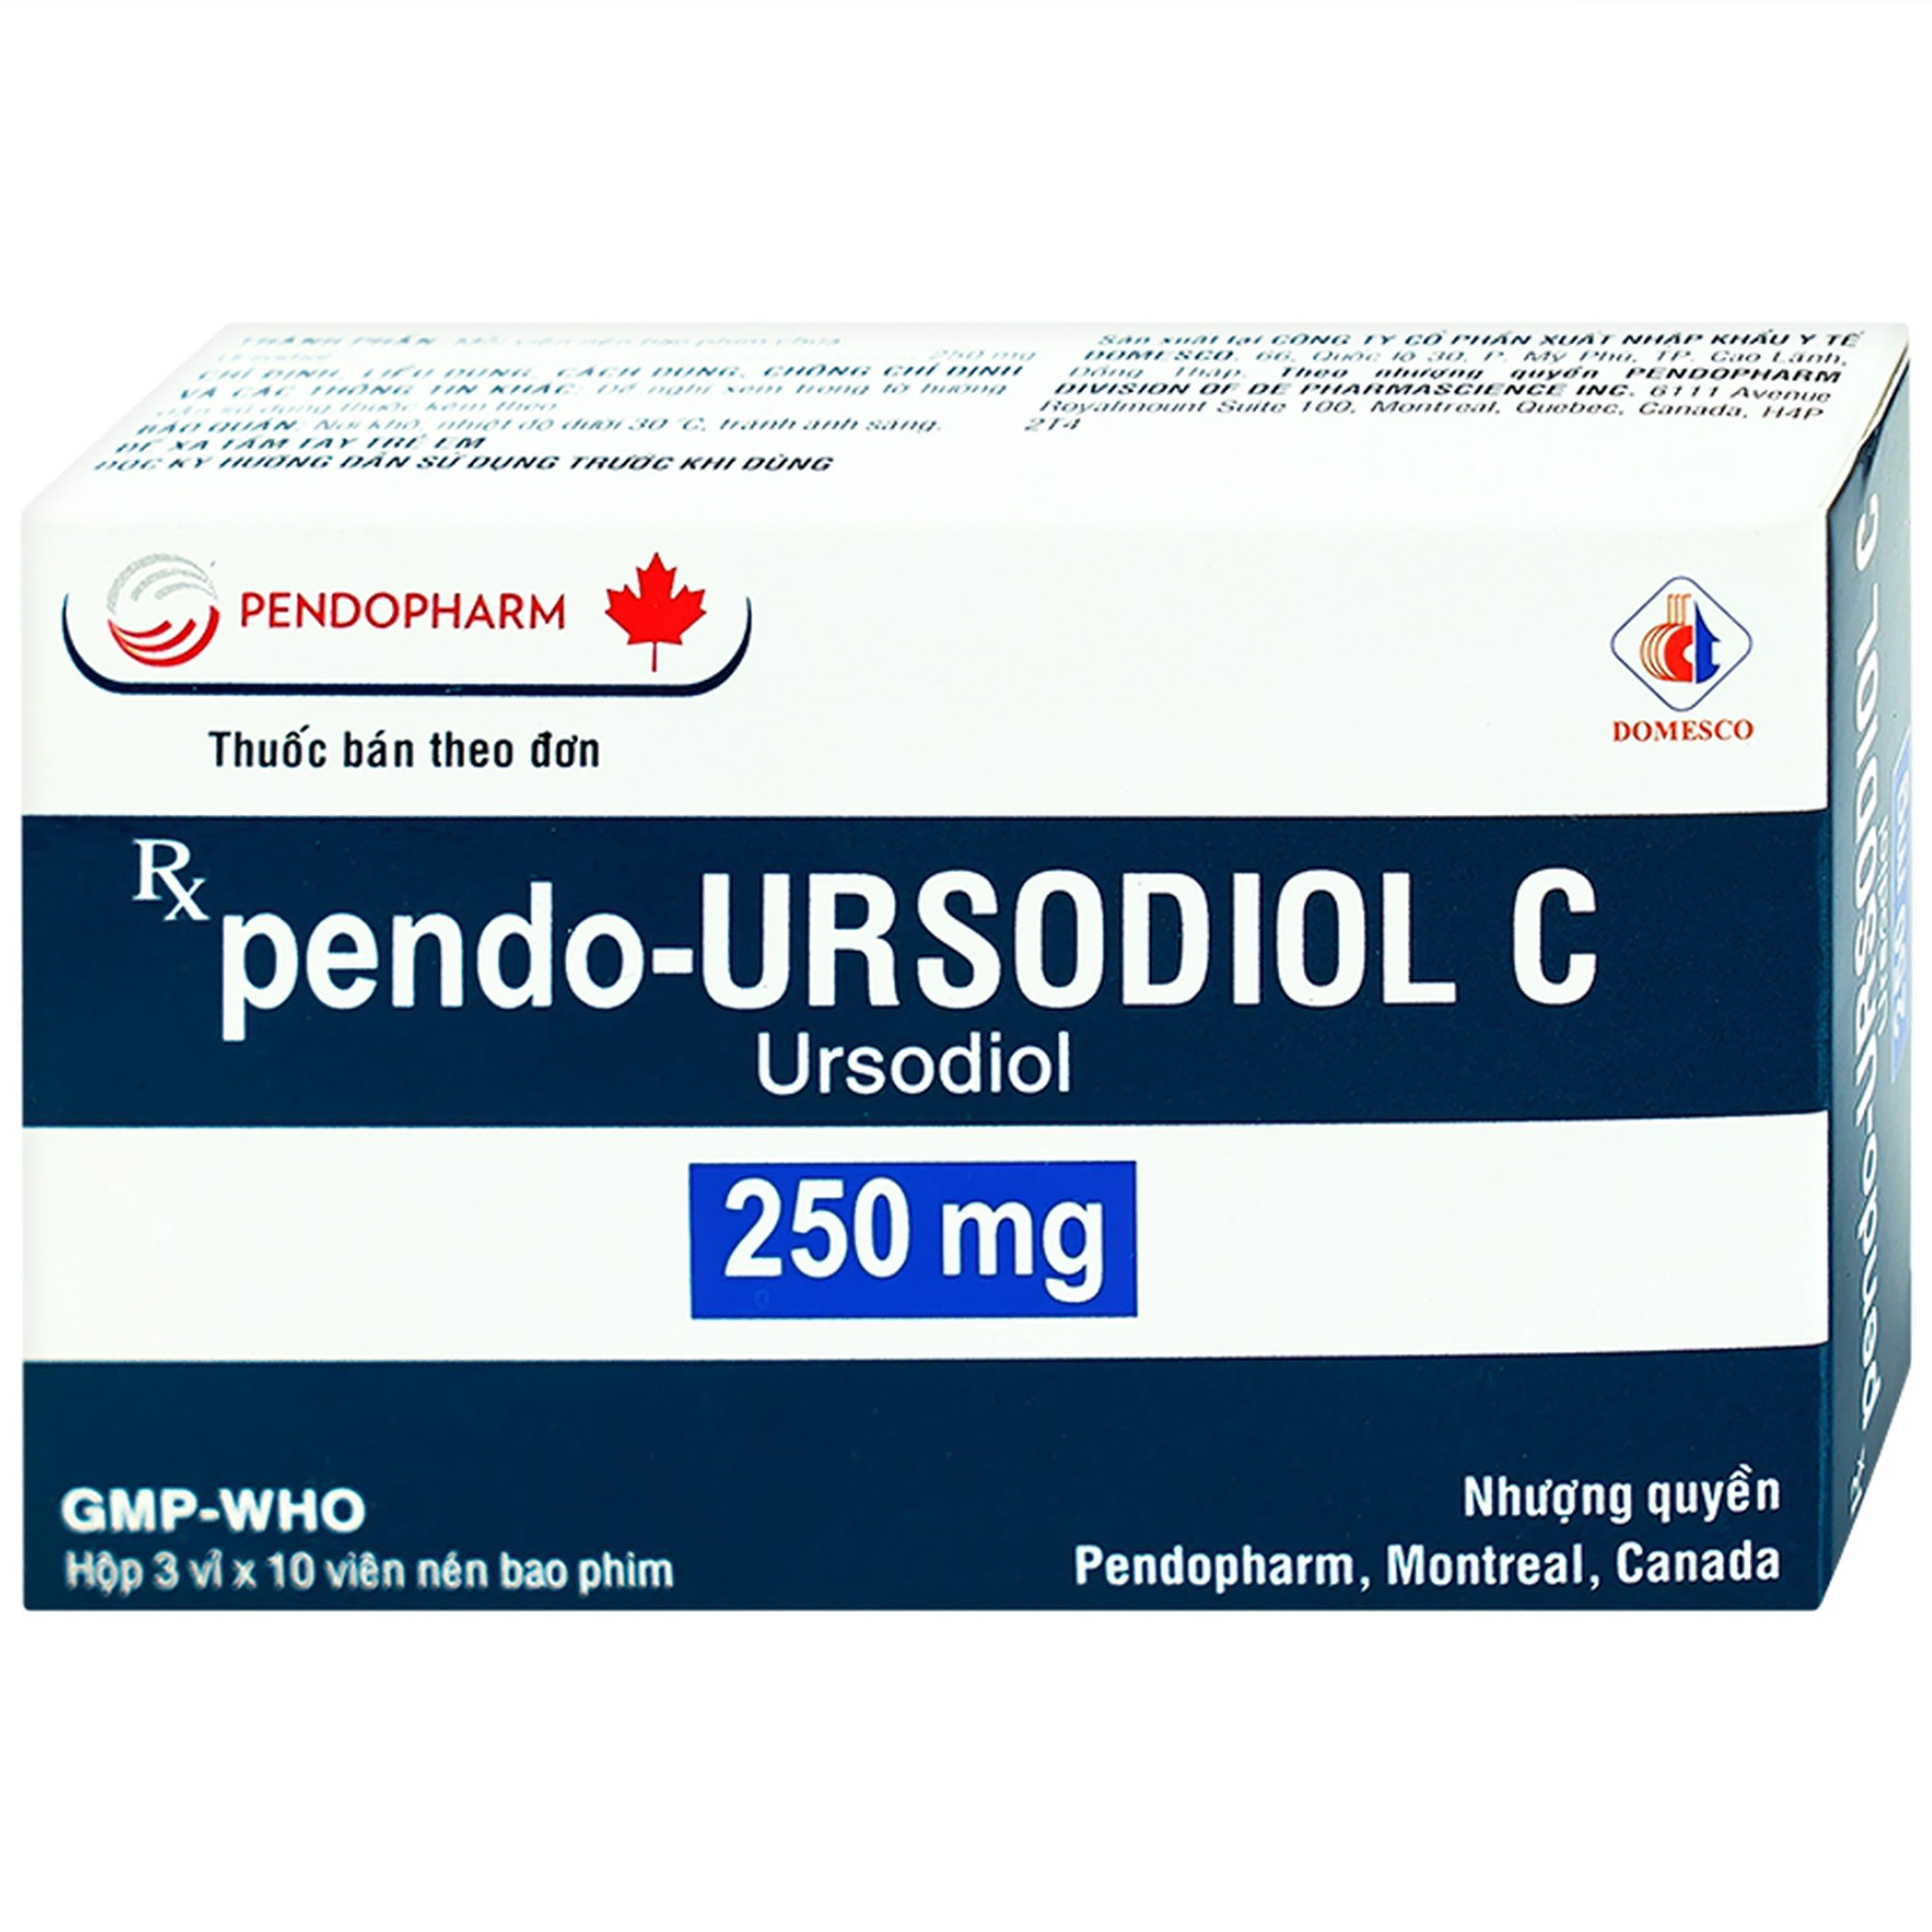 Viên nén pendo-Ursodiol C 250mg Domesco điều trị xơ gan mật nguyên phát (3 vỉ x 10 viên)